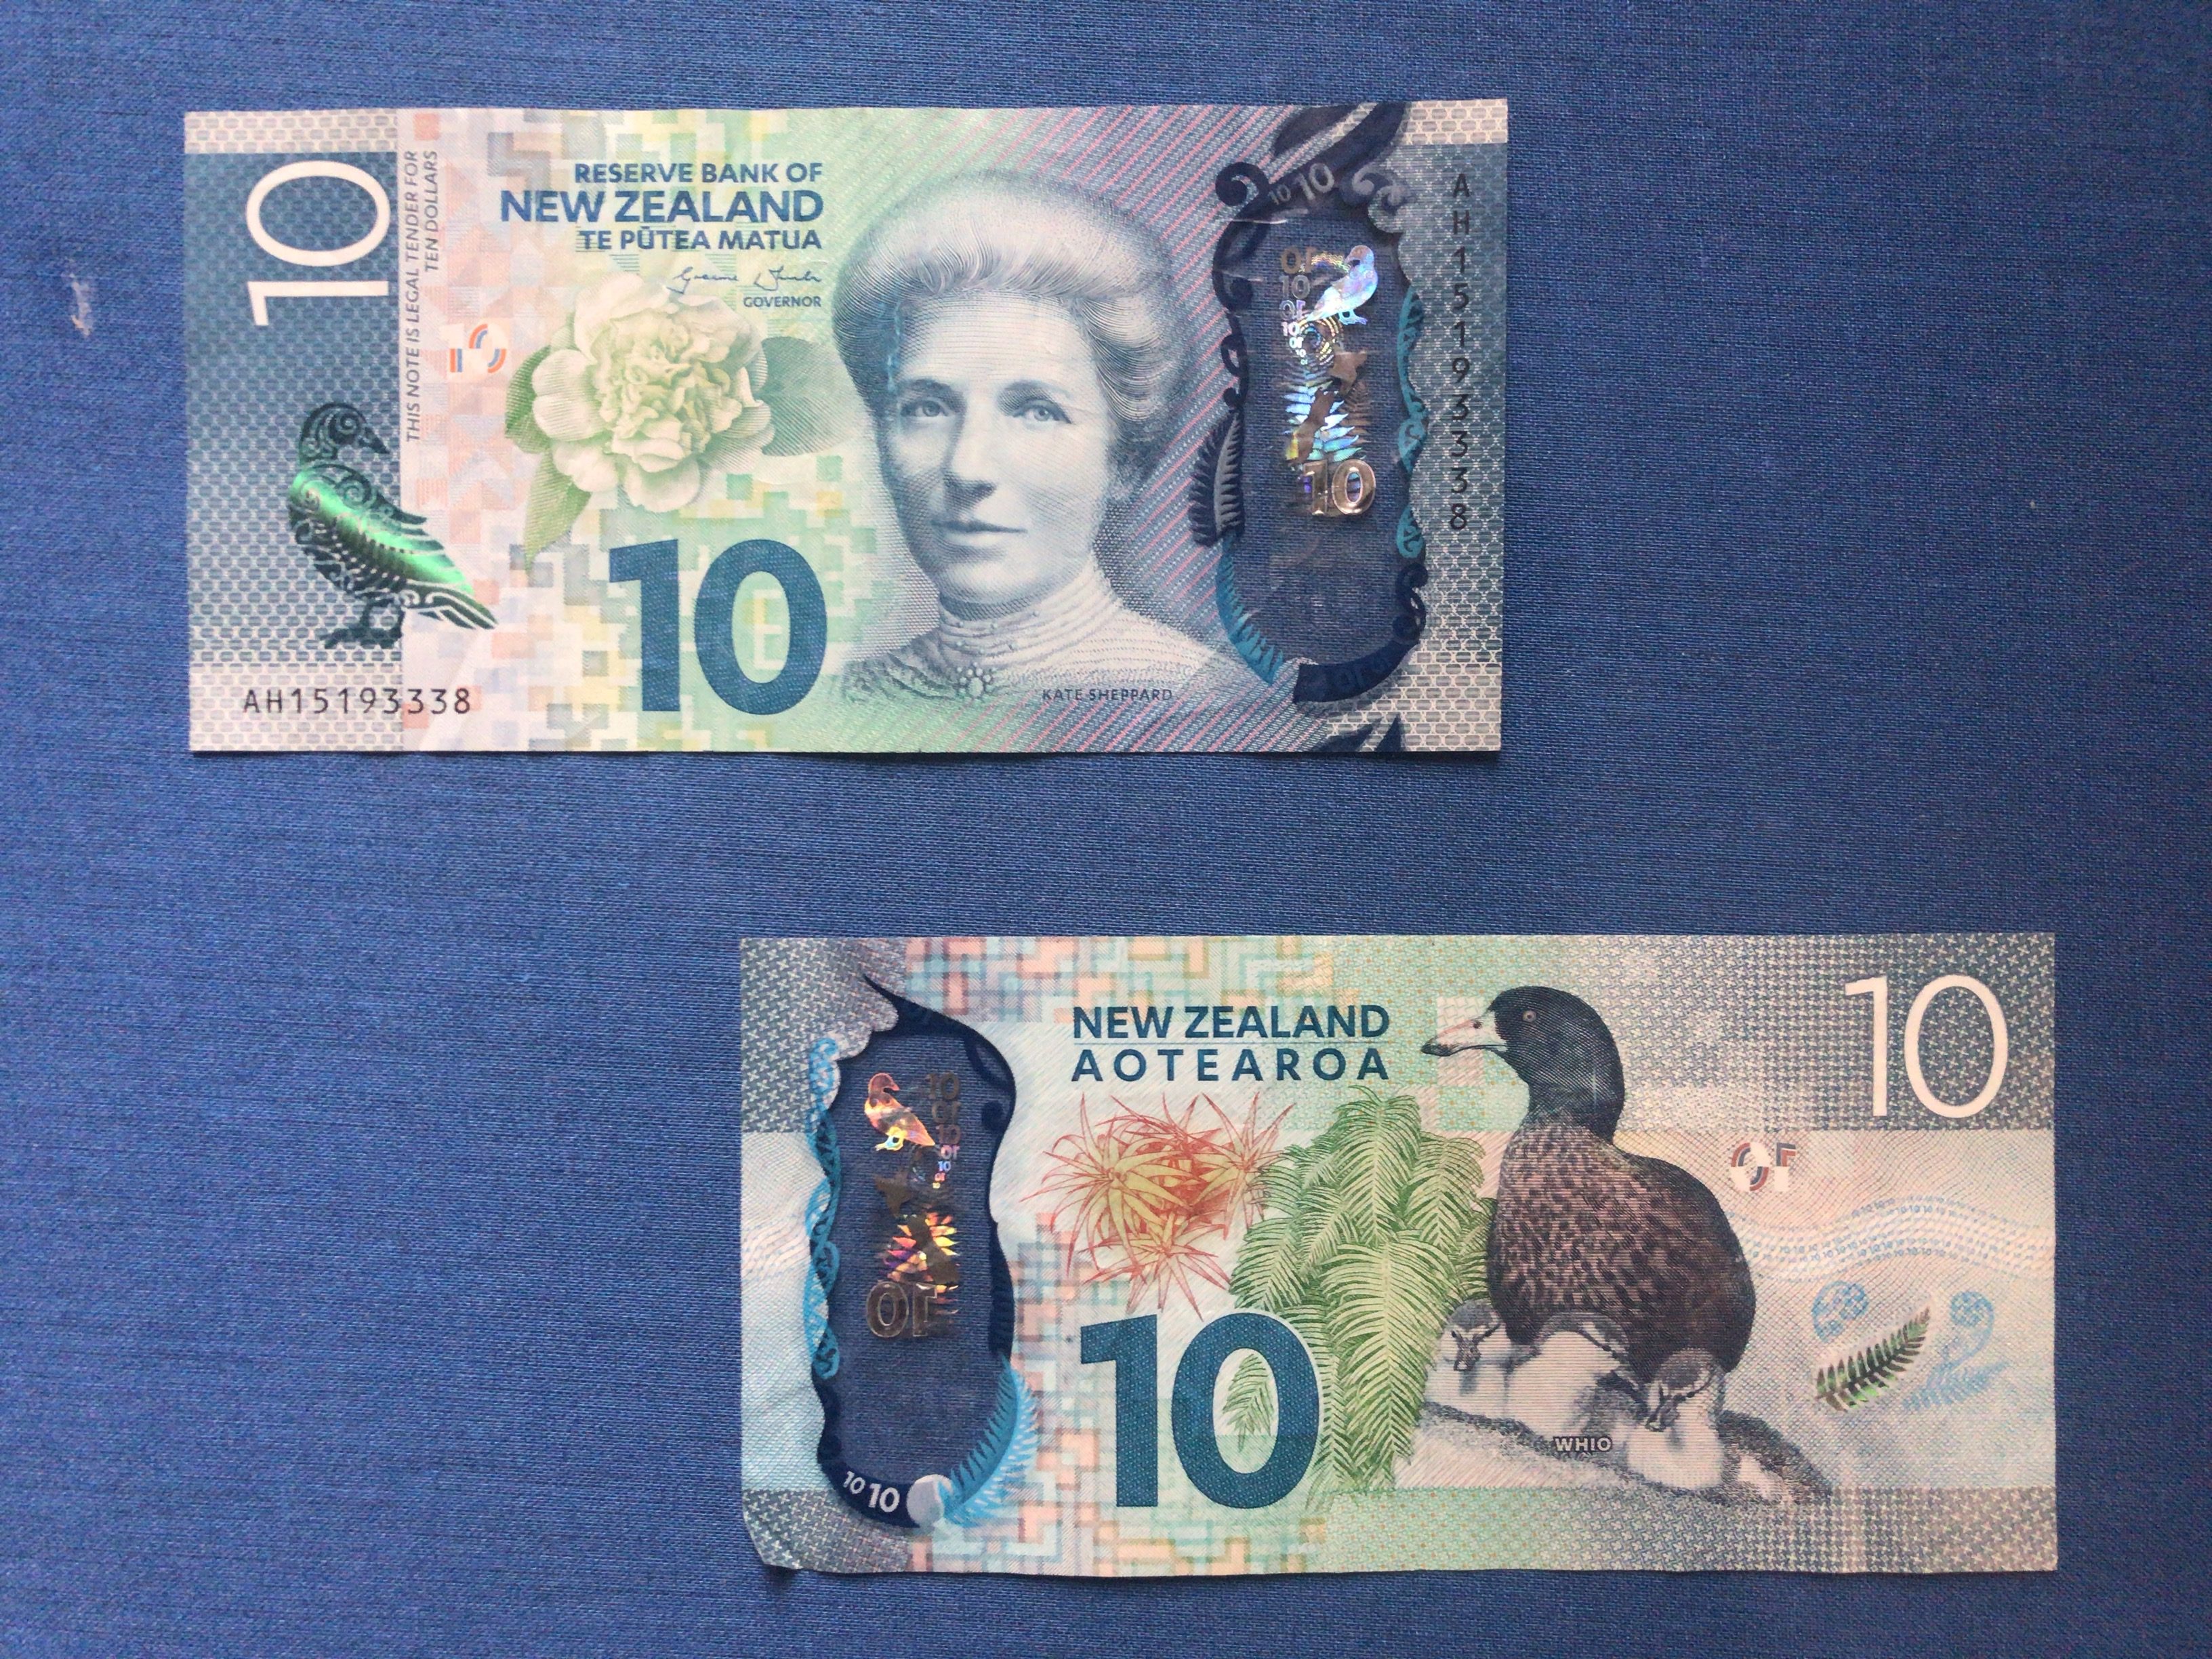 豪華絢爛】ニュージーランド新10ドル紙幣についてまとめてみる | シアターカミカゼ